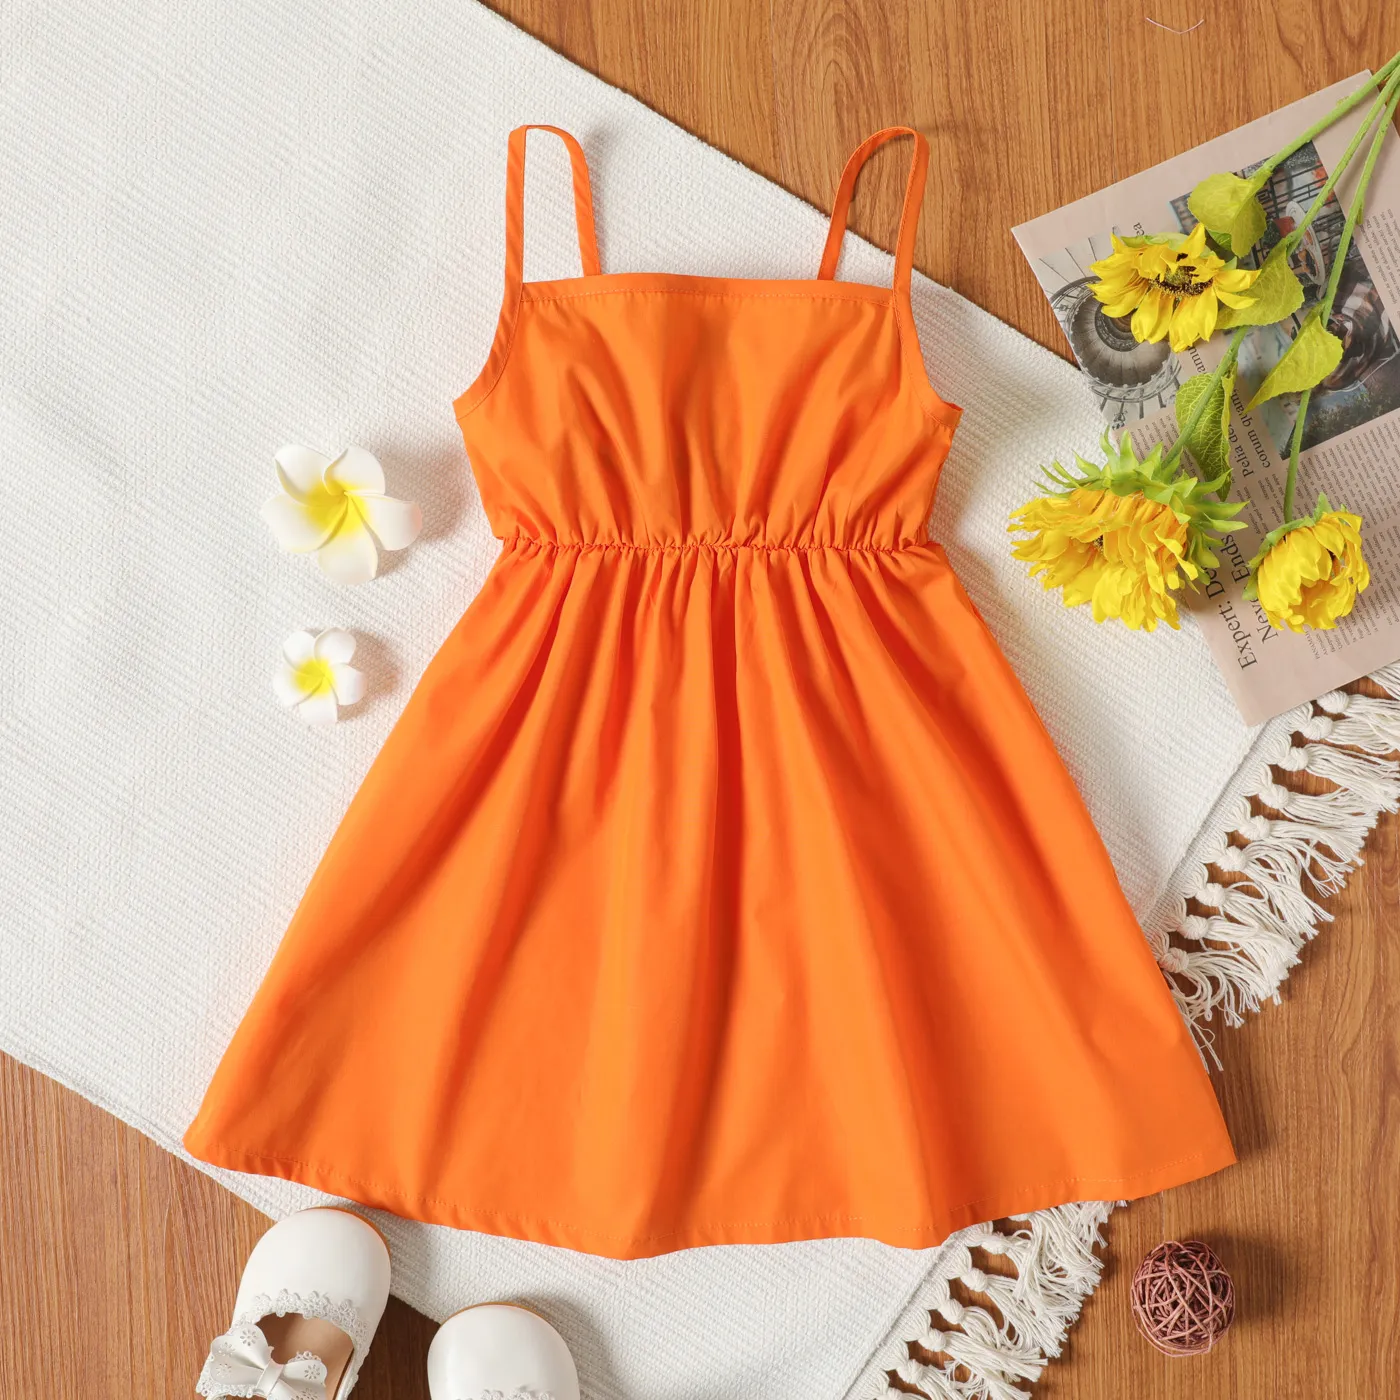 Bébé Fille Bowknot Conception Orange / Robe Camisole à Imprimé Floral